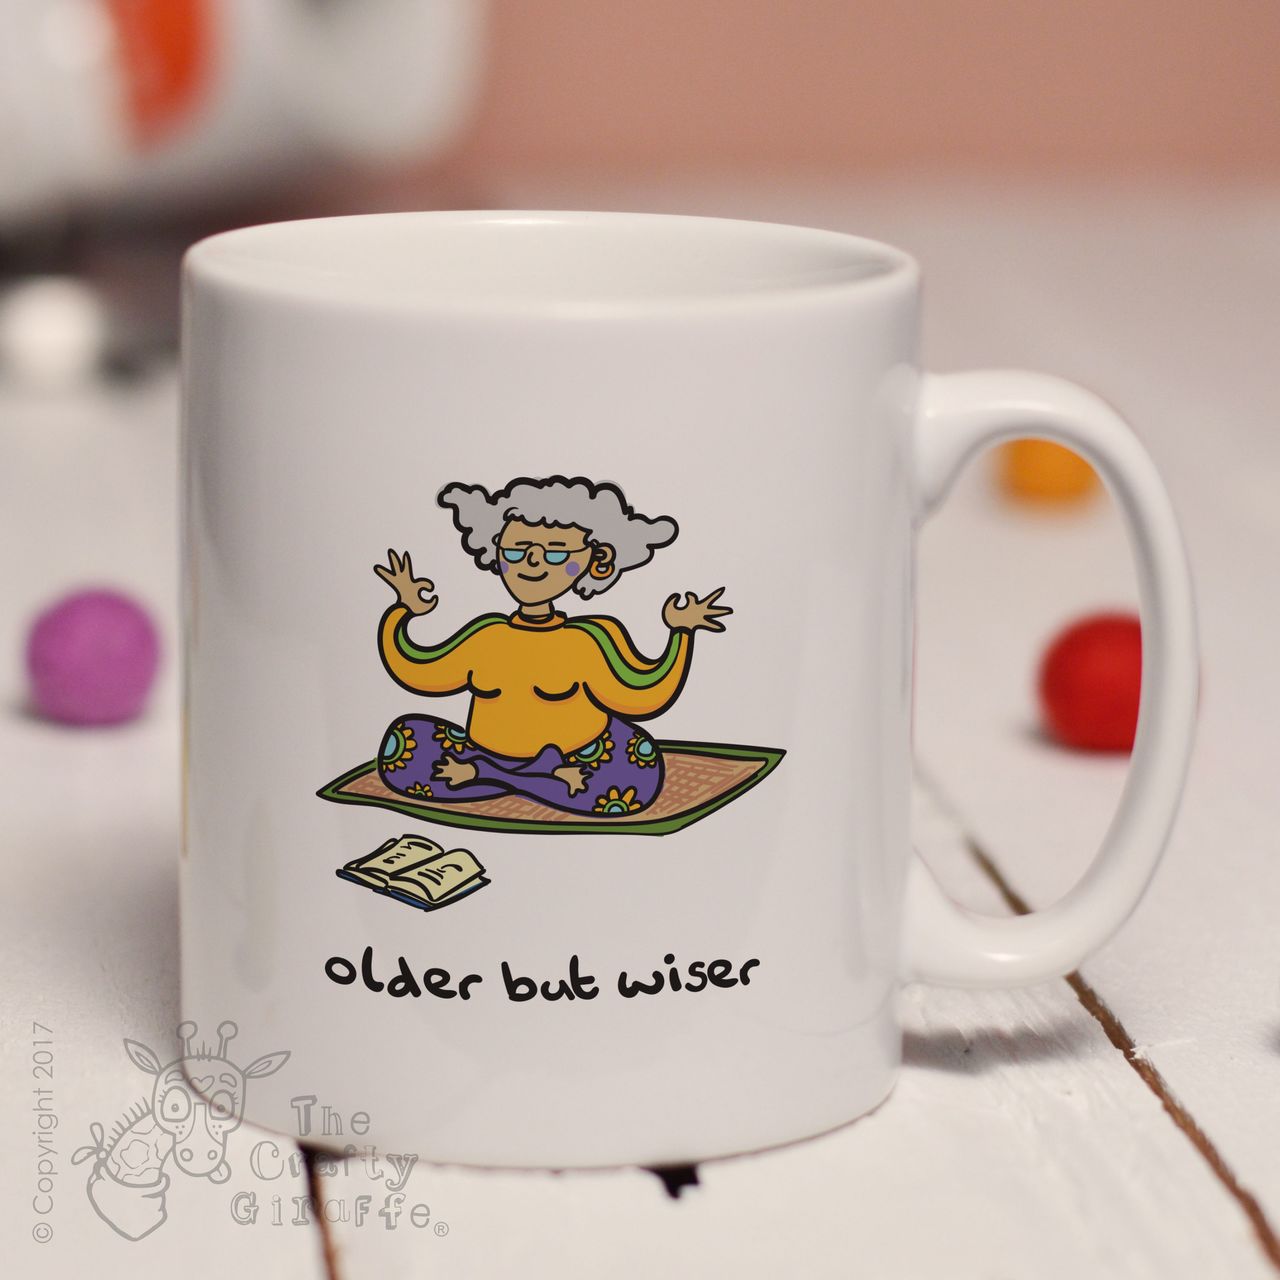 Older but wiser (lady) mug